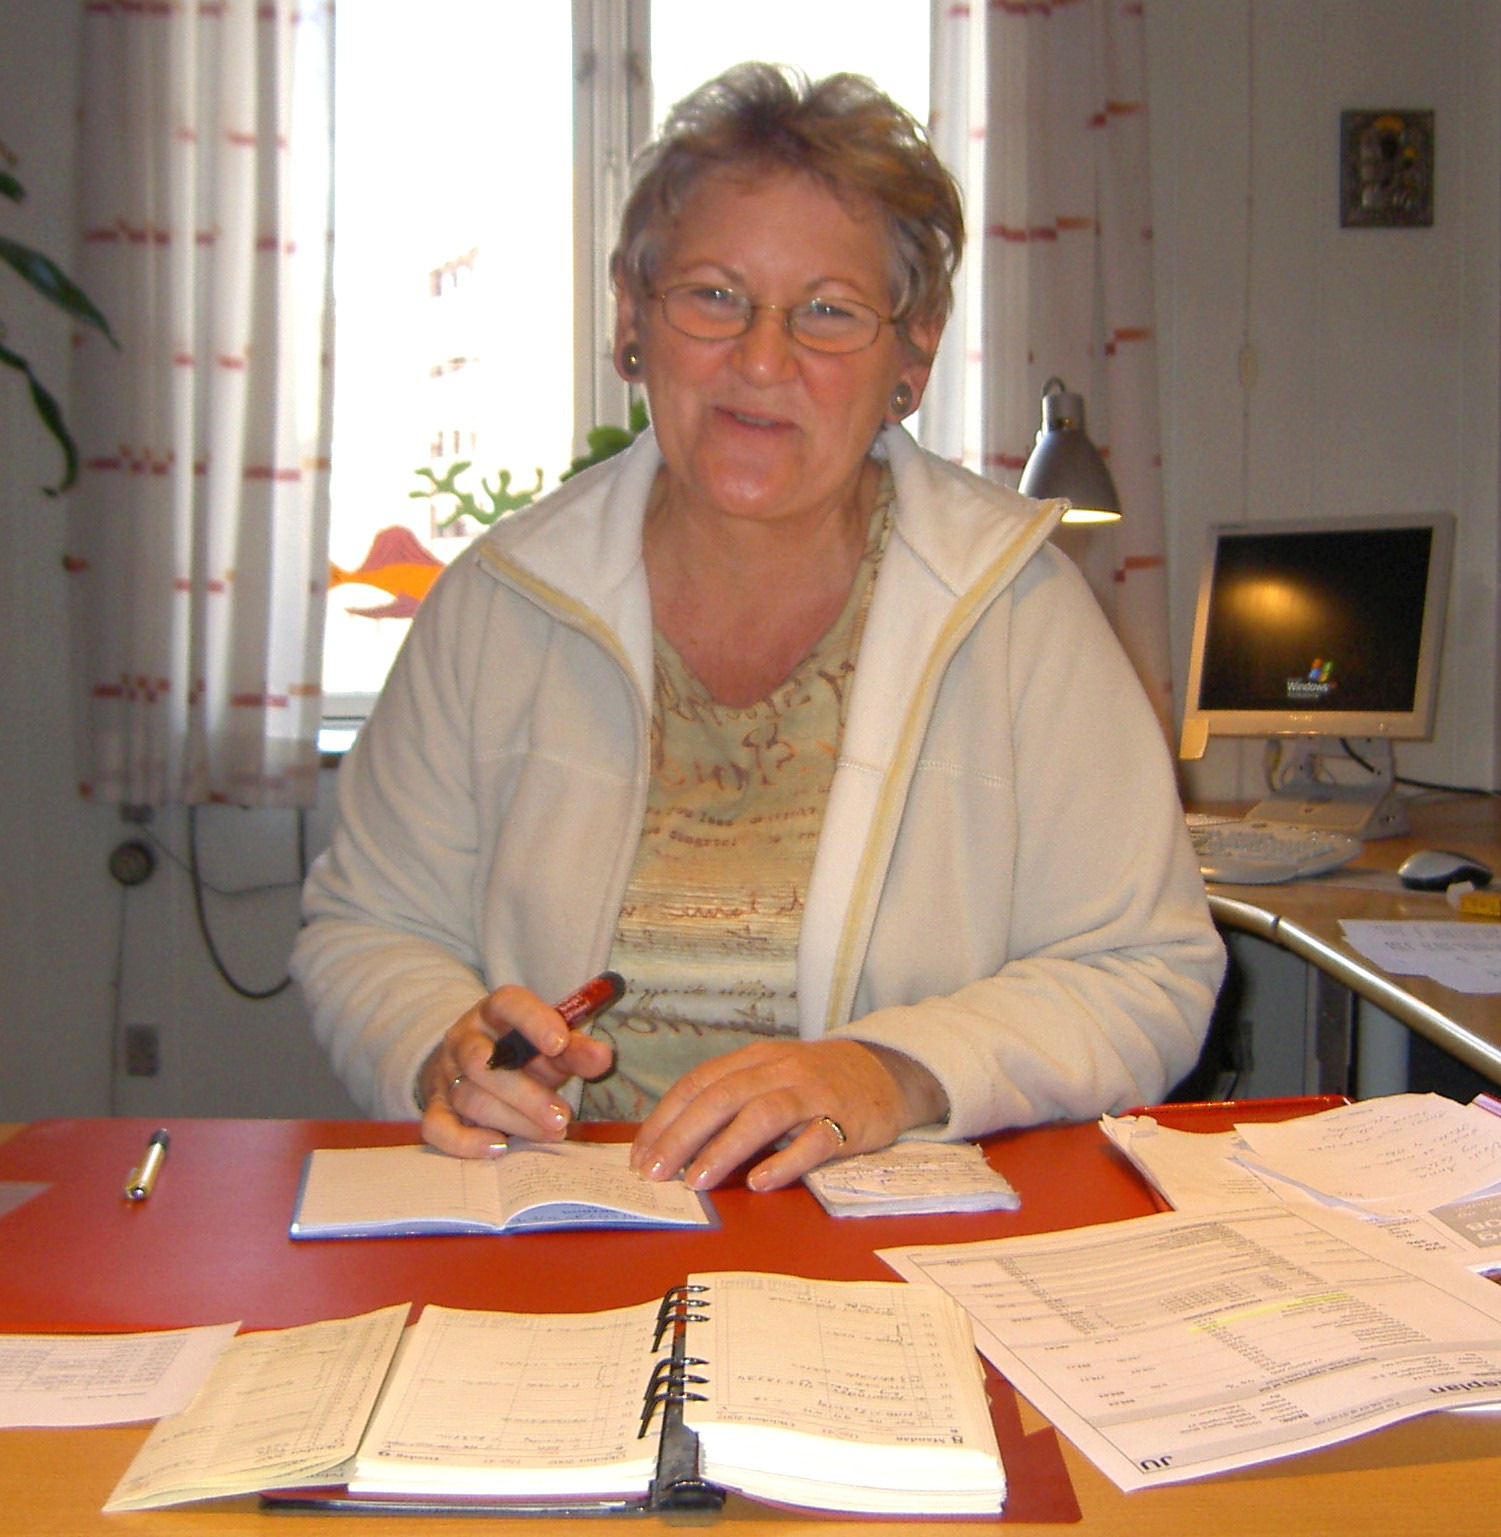 Skolen i af Nørrebro - oktober 2007 Kirsten Hanberg siger farvel Efter 16 år som skoleleder på Sankt Ansgars Skole har Kirsten Hanberg valgt at sige farvel og gå på pension.